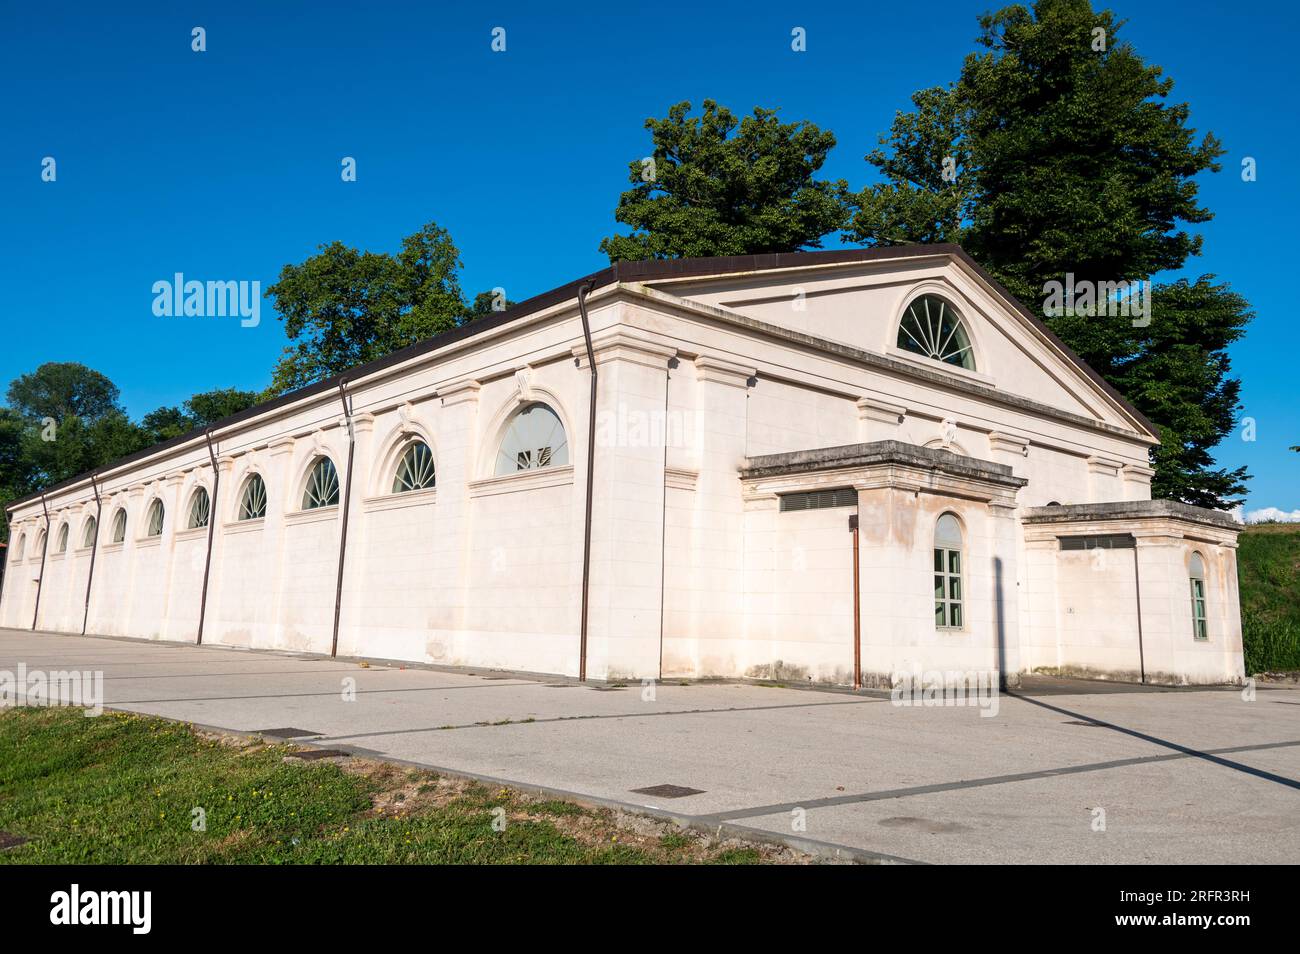 Le long bâtiment blanc avec de grandes fenêtres en forme d'arc est le Padiglione Panini - ex Cavallerizza ( Pavillon Panini - ancienne femme à cheval) sur Piazzale Banque D'Images